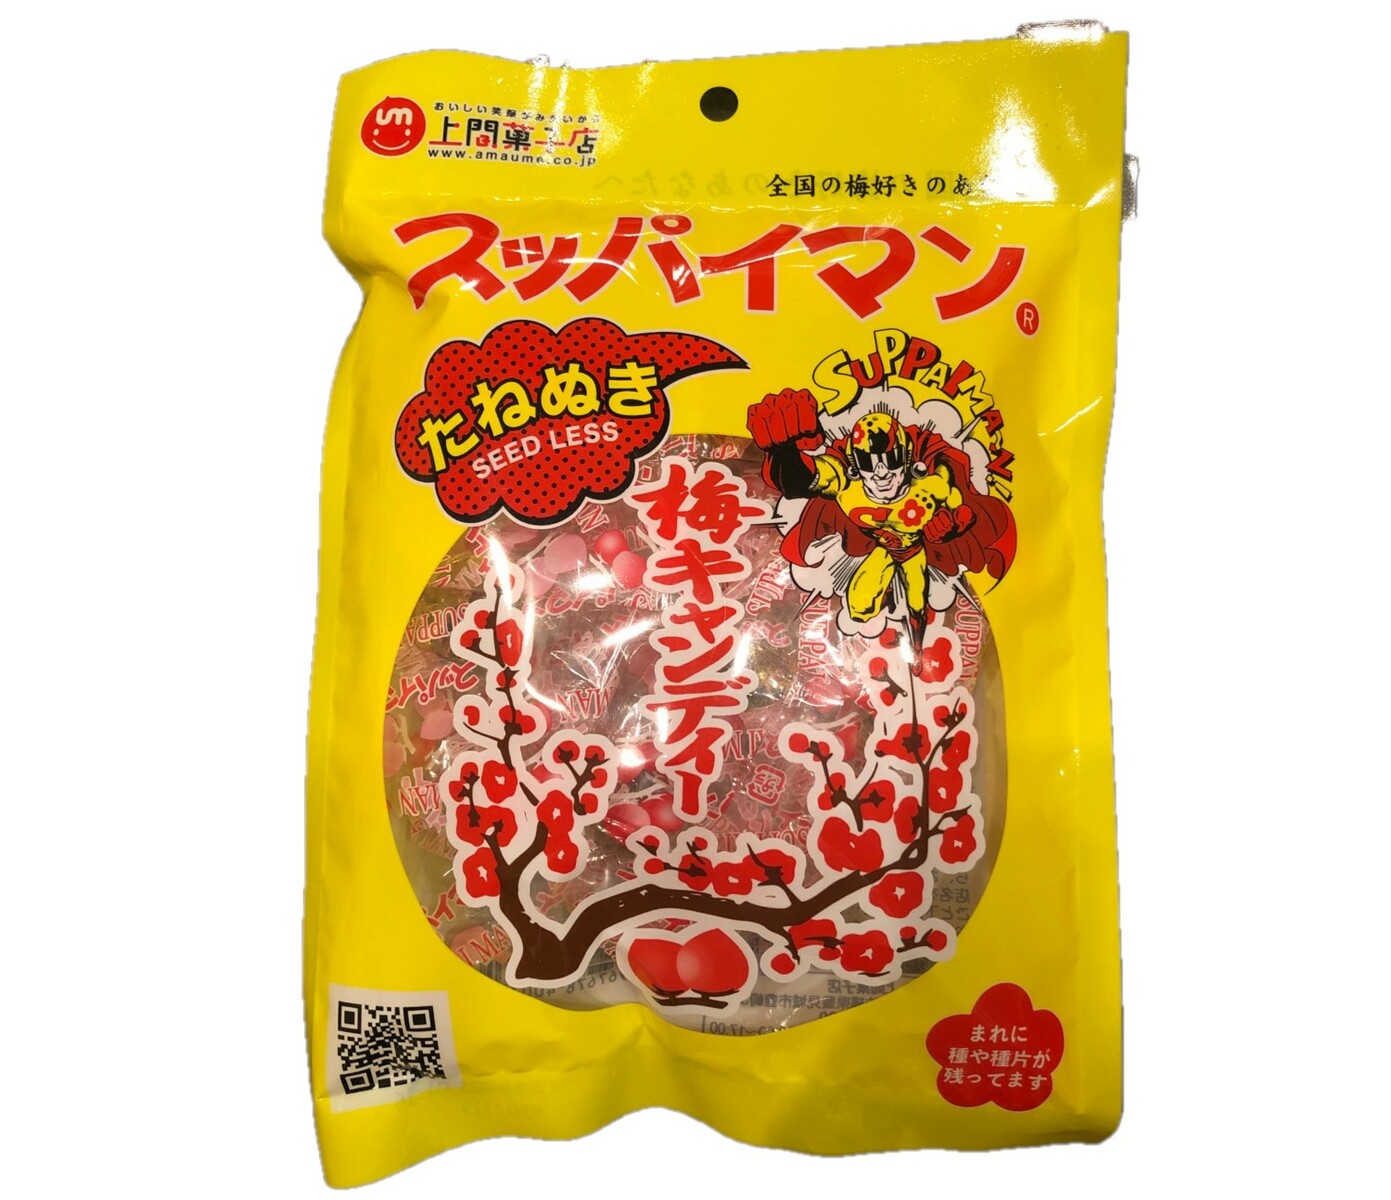 上間菓子店『スッパイマン 梅キャンディー』